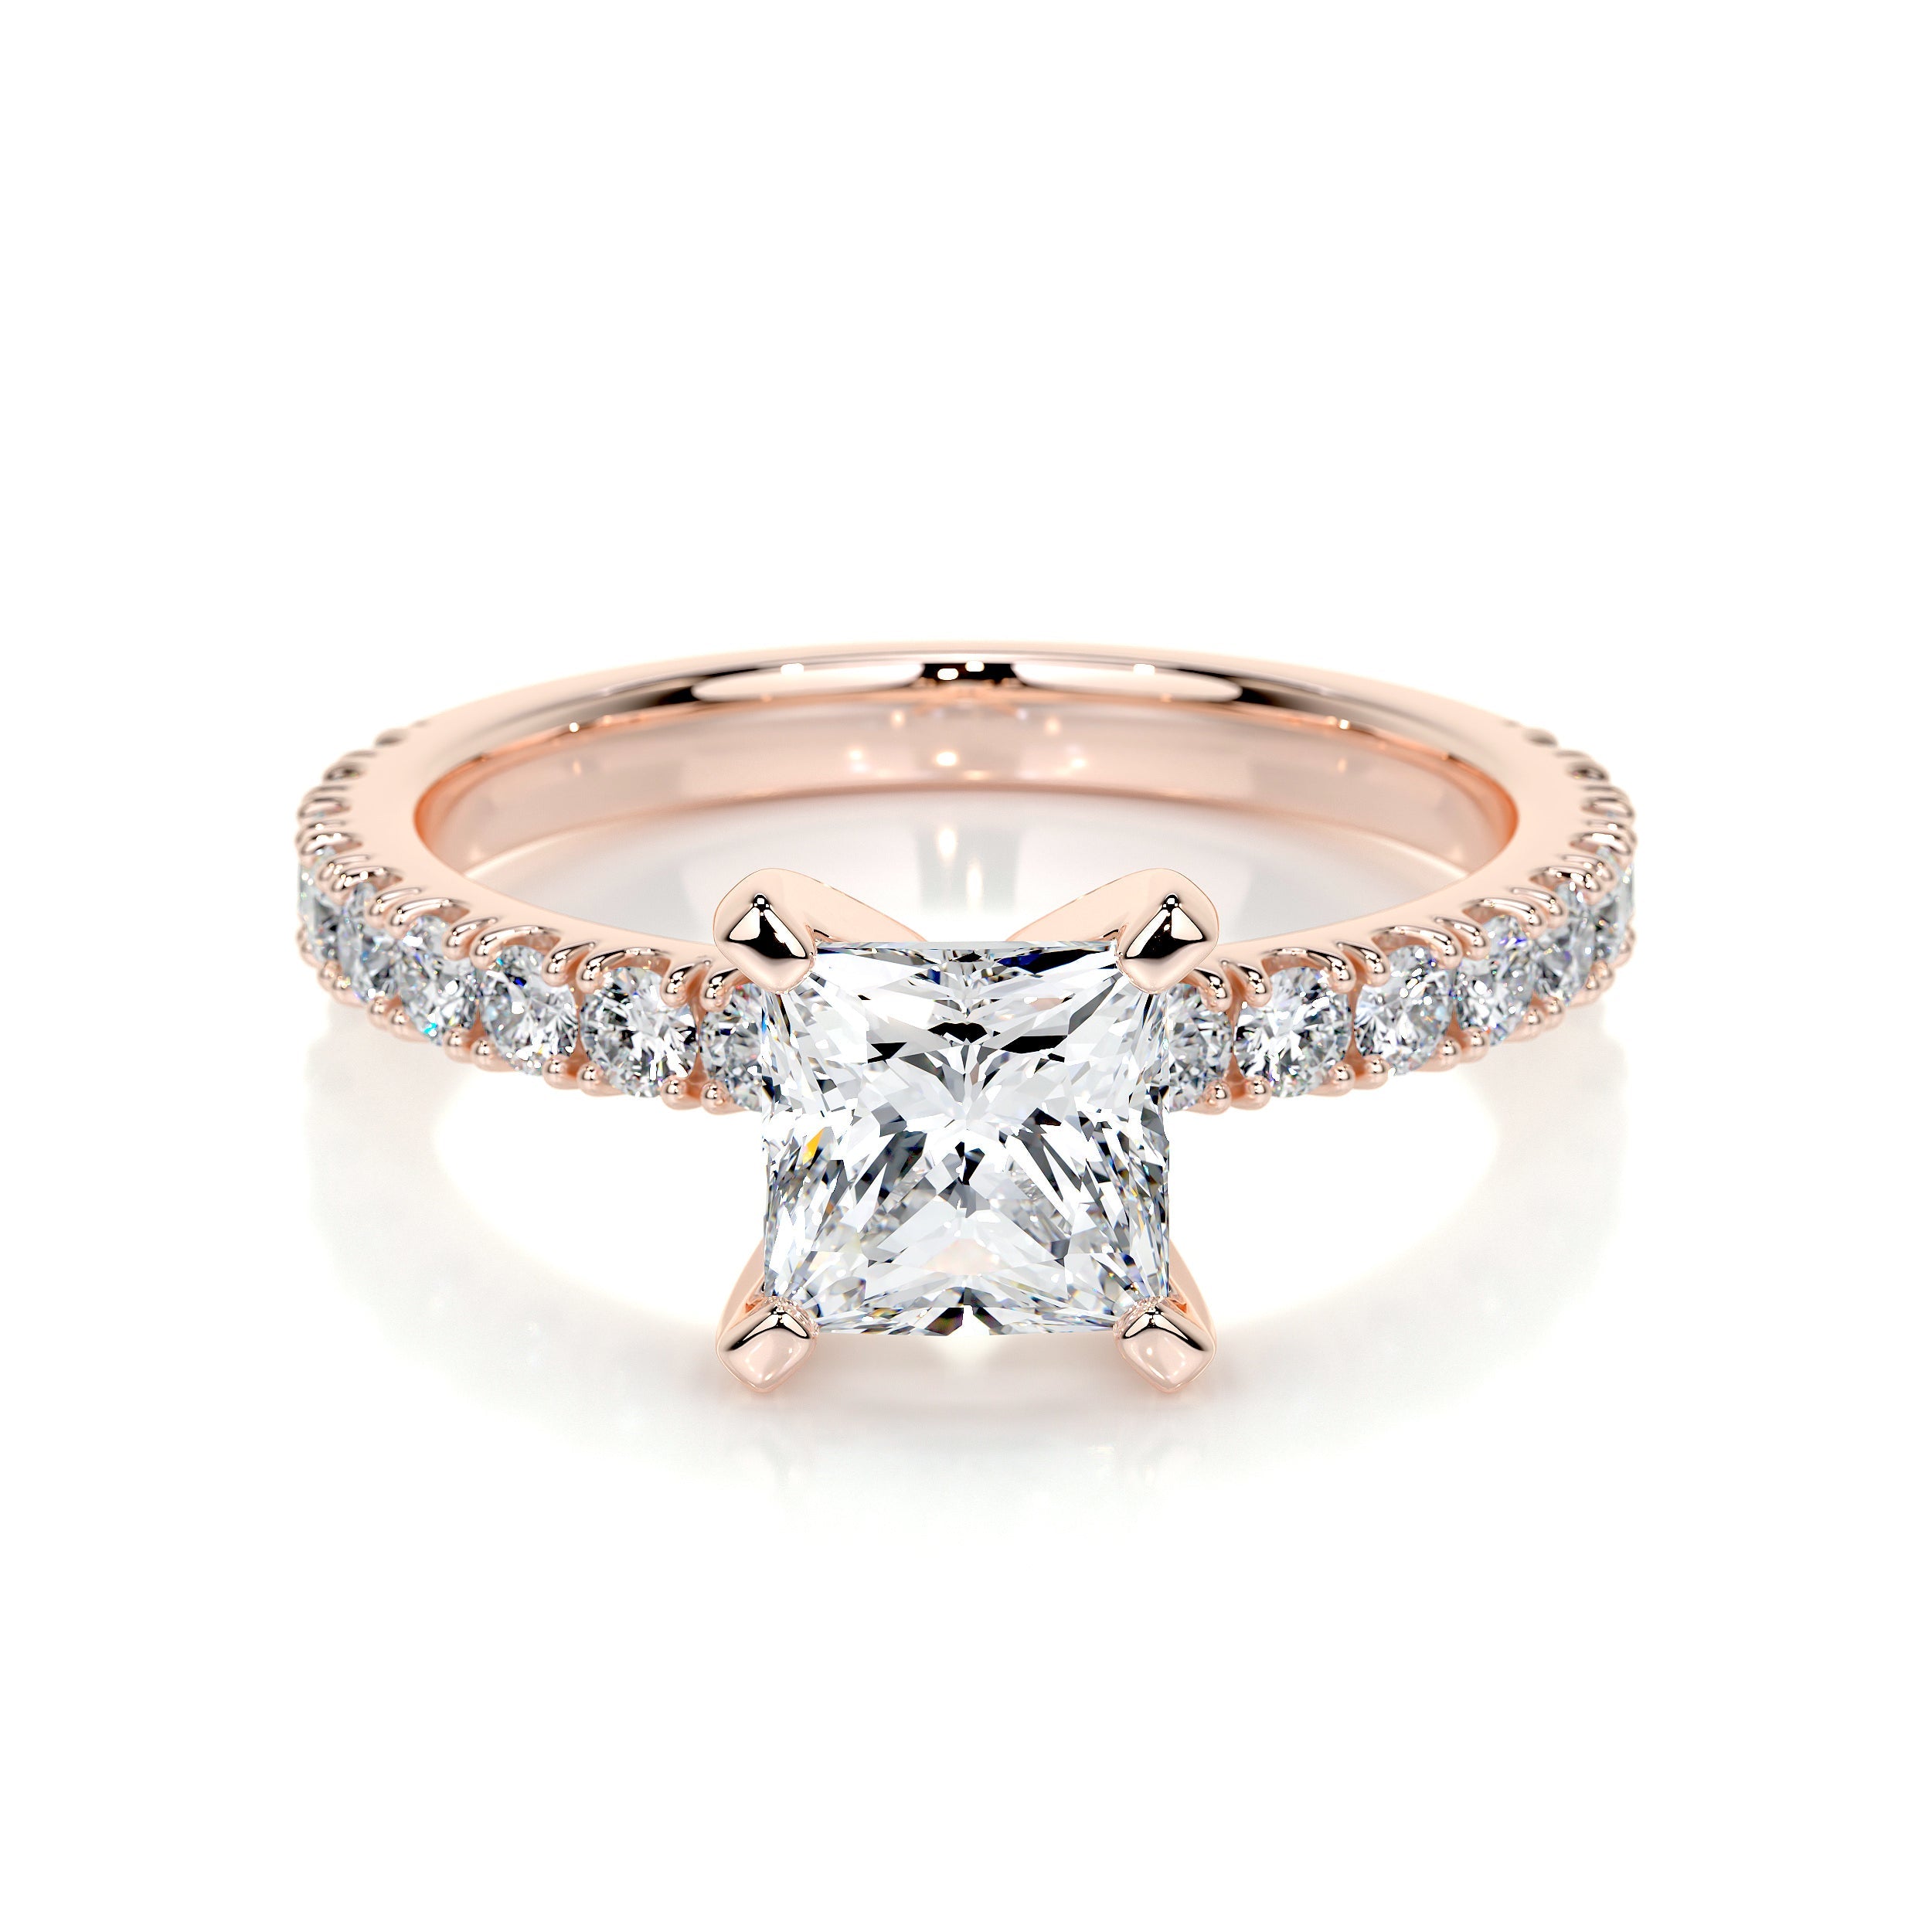 Blair Lab Grown Diamond Ring   (1.5 Carat) -14K Rose Gold